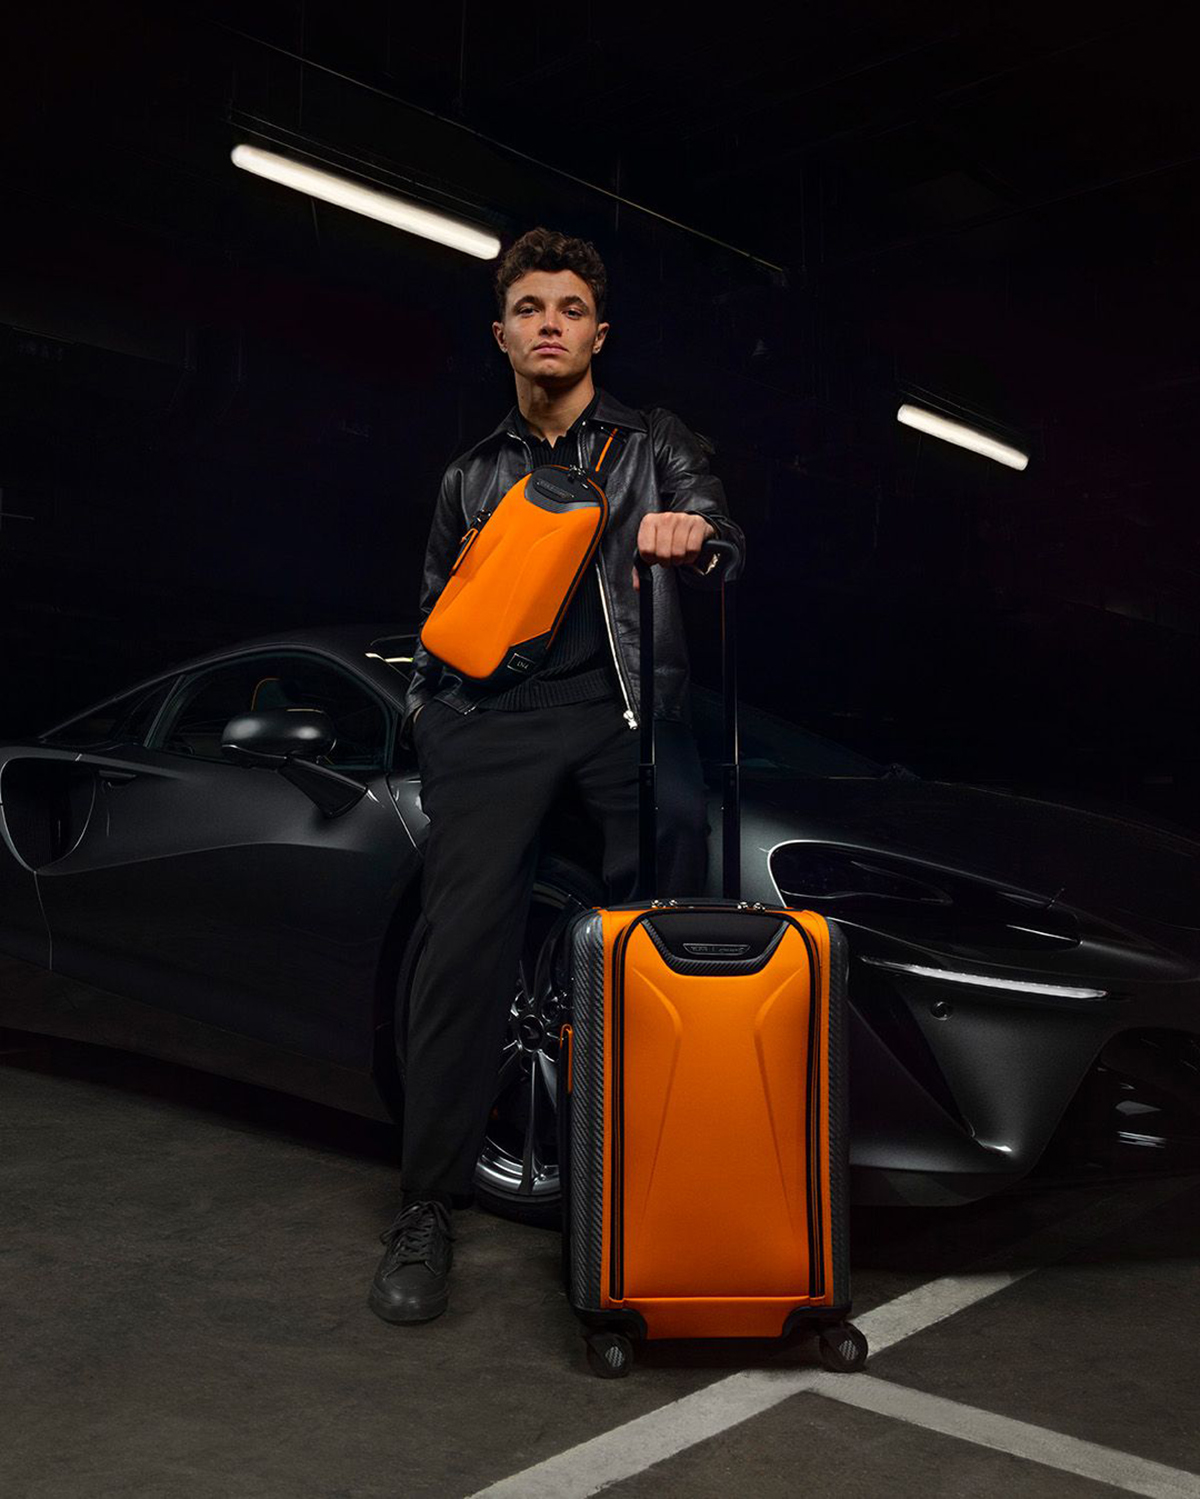 Lando Norris holding an orange rucksack and standing next to an orange suitacase